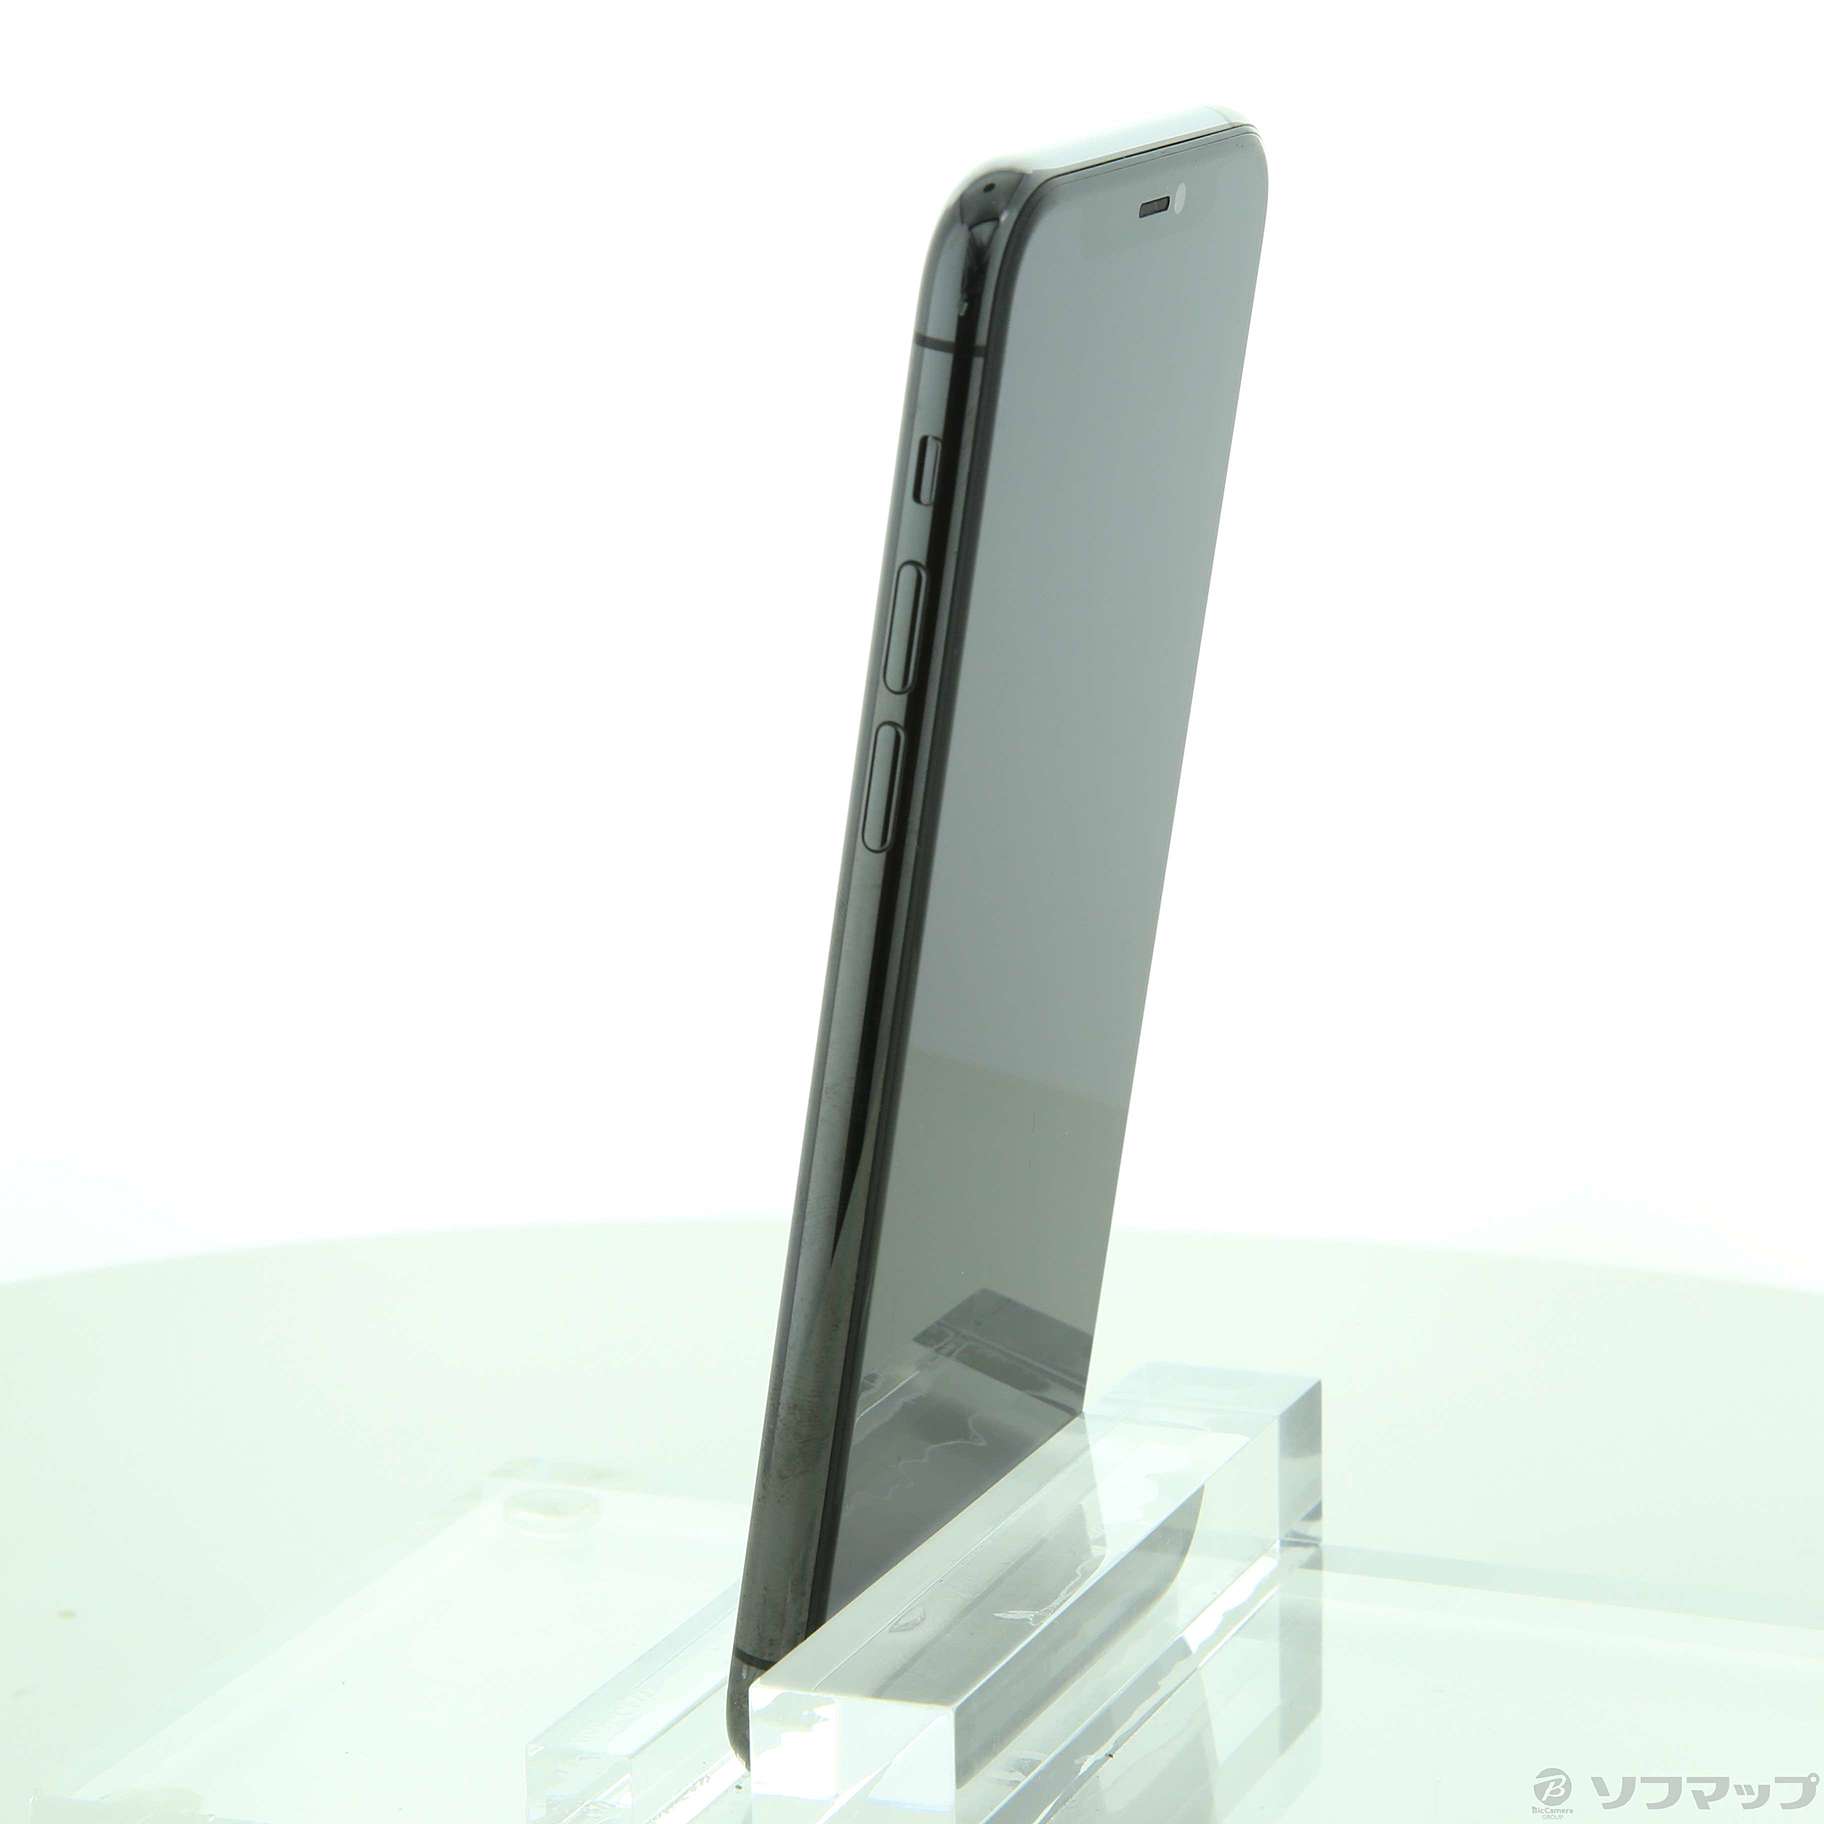 くらしを楽しむアイテム 中古 安心保証  SoftBank MWC22J スペースグレイ  iPhone11 Pro 64GB